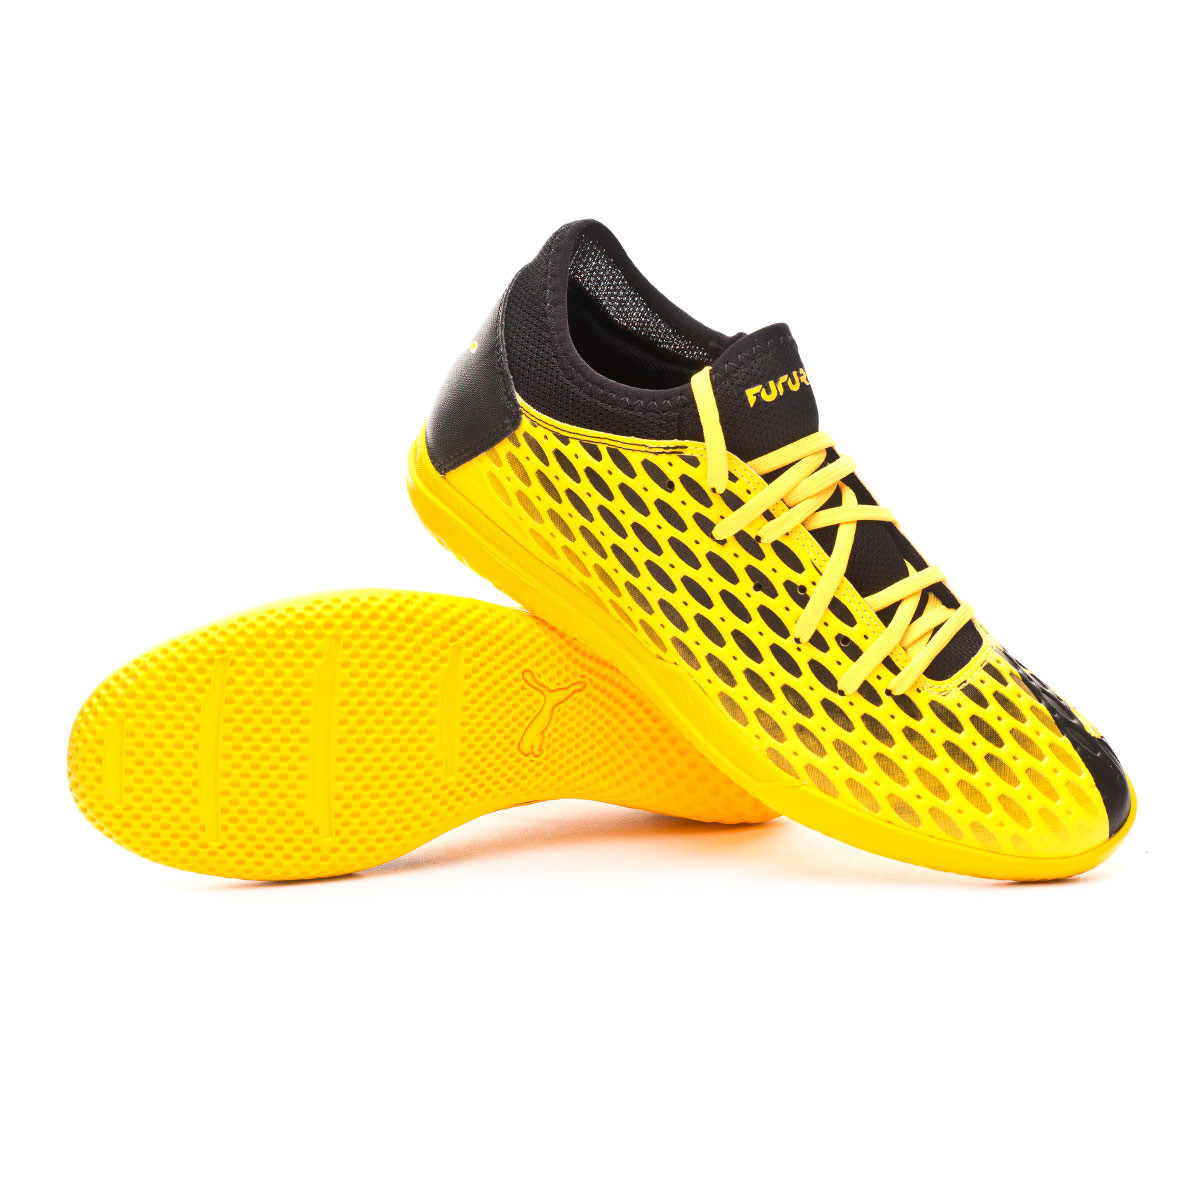 puma future indoor soccer shoes